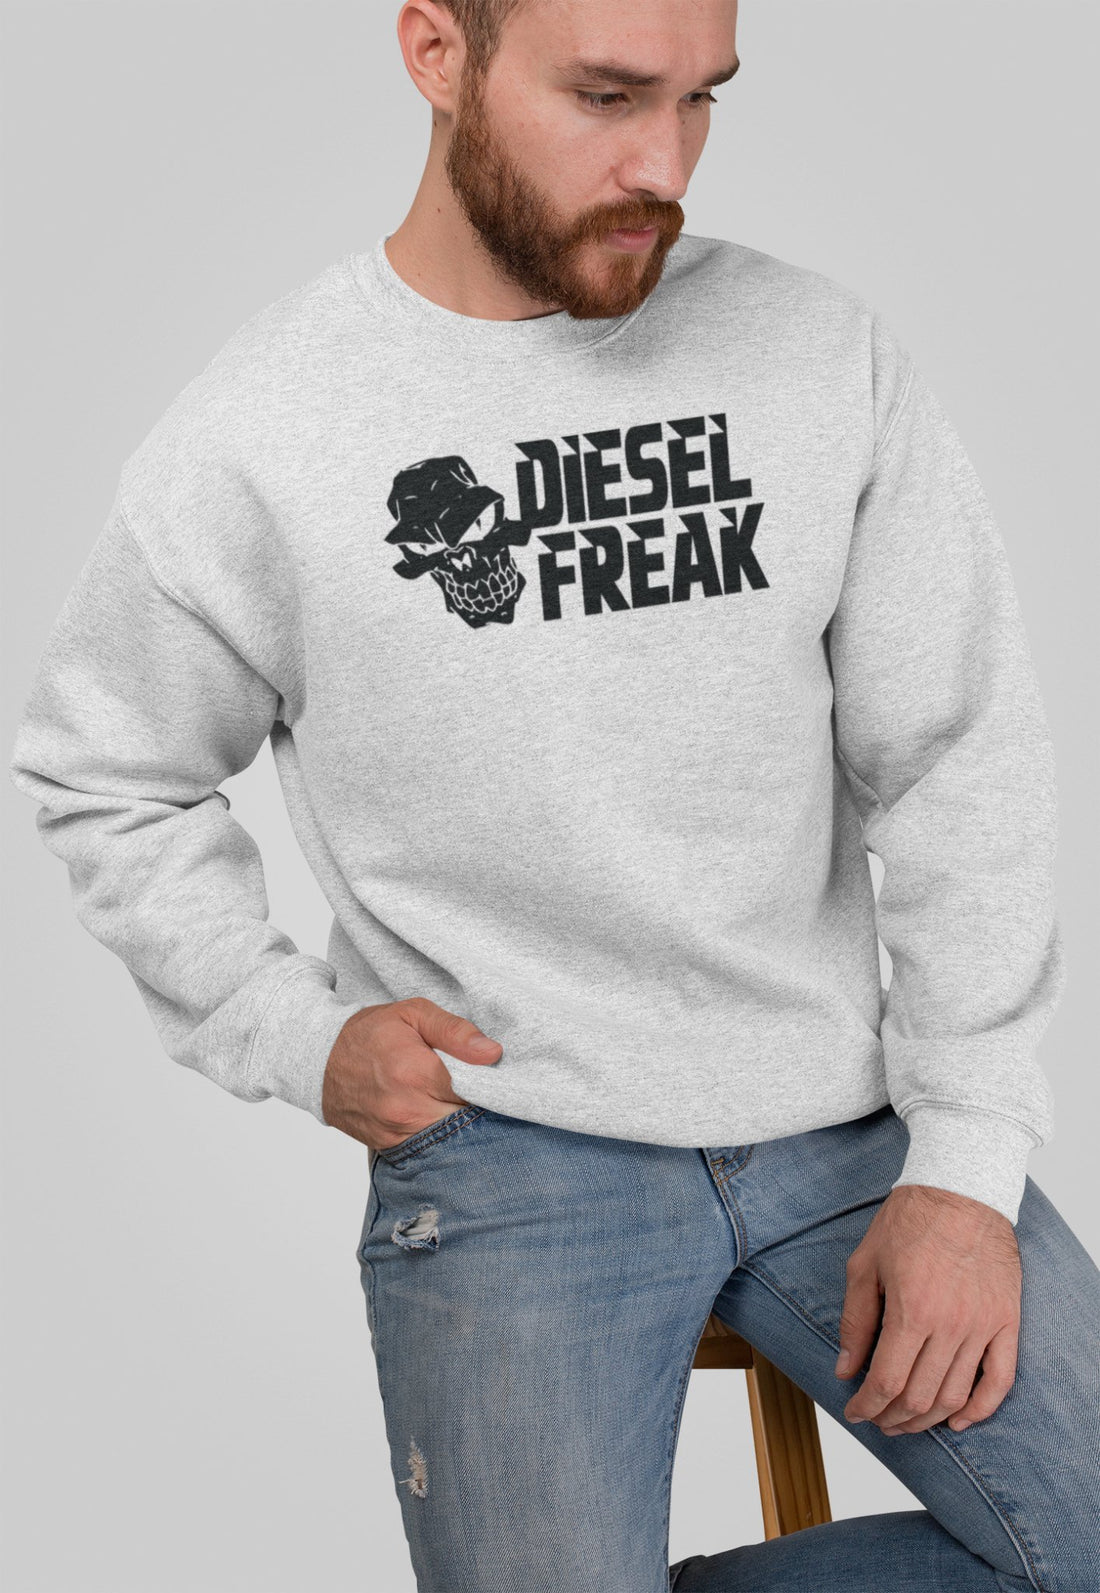 Diesel Freak Stacked Crewneck - Diesel Freak